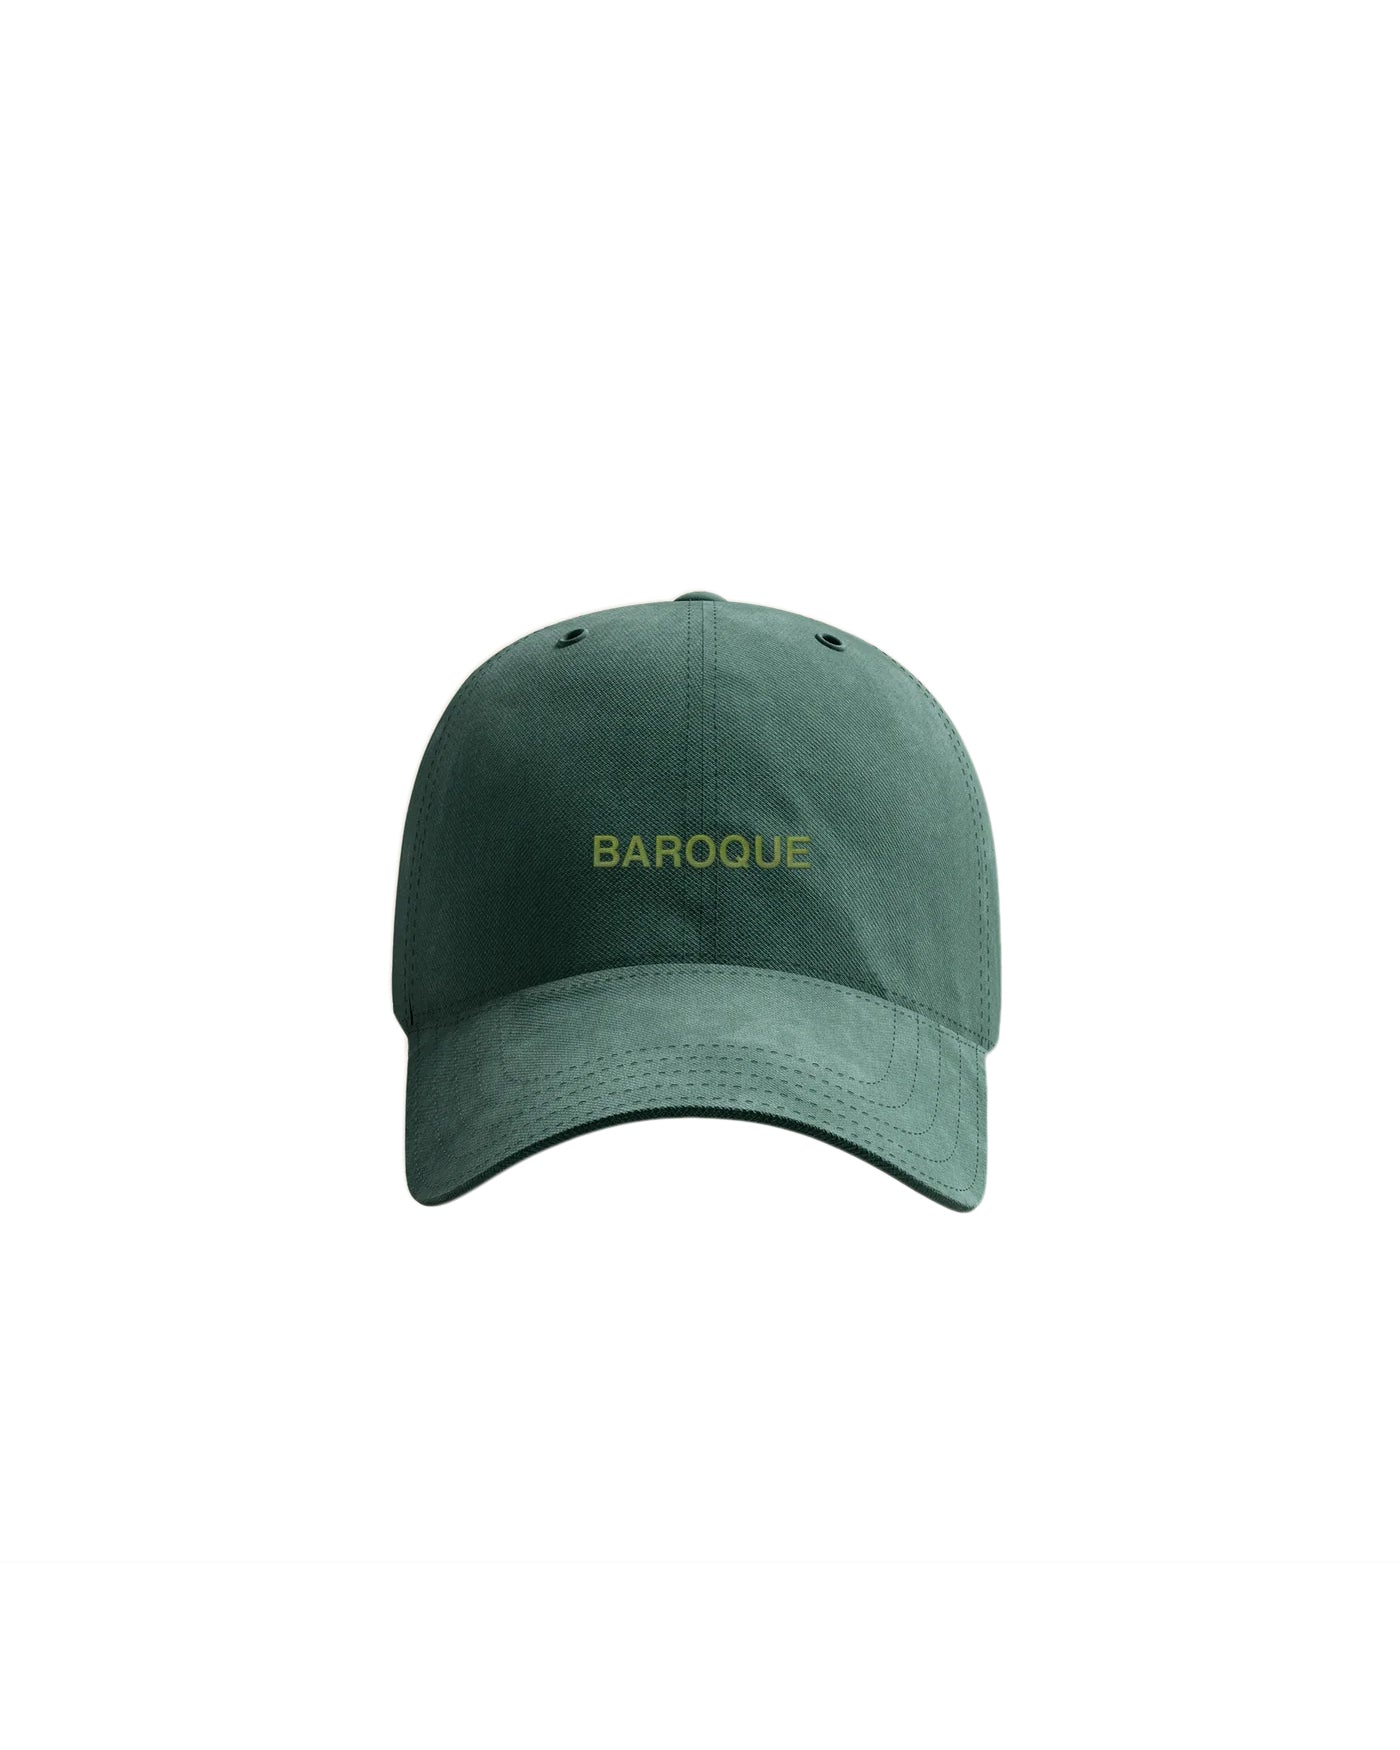 Baroque Dad Hat